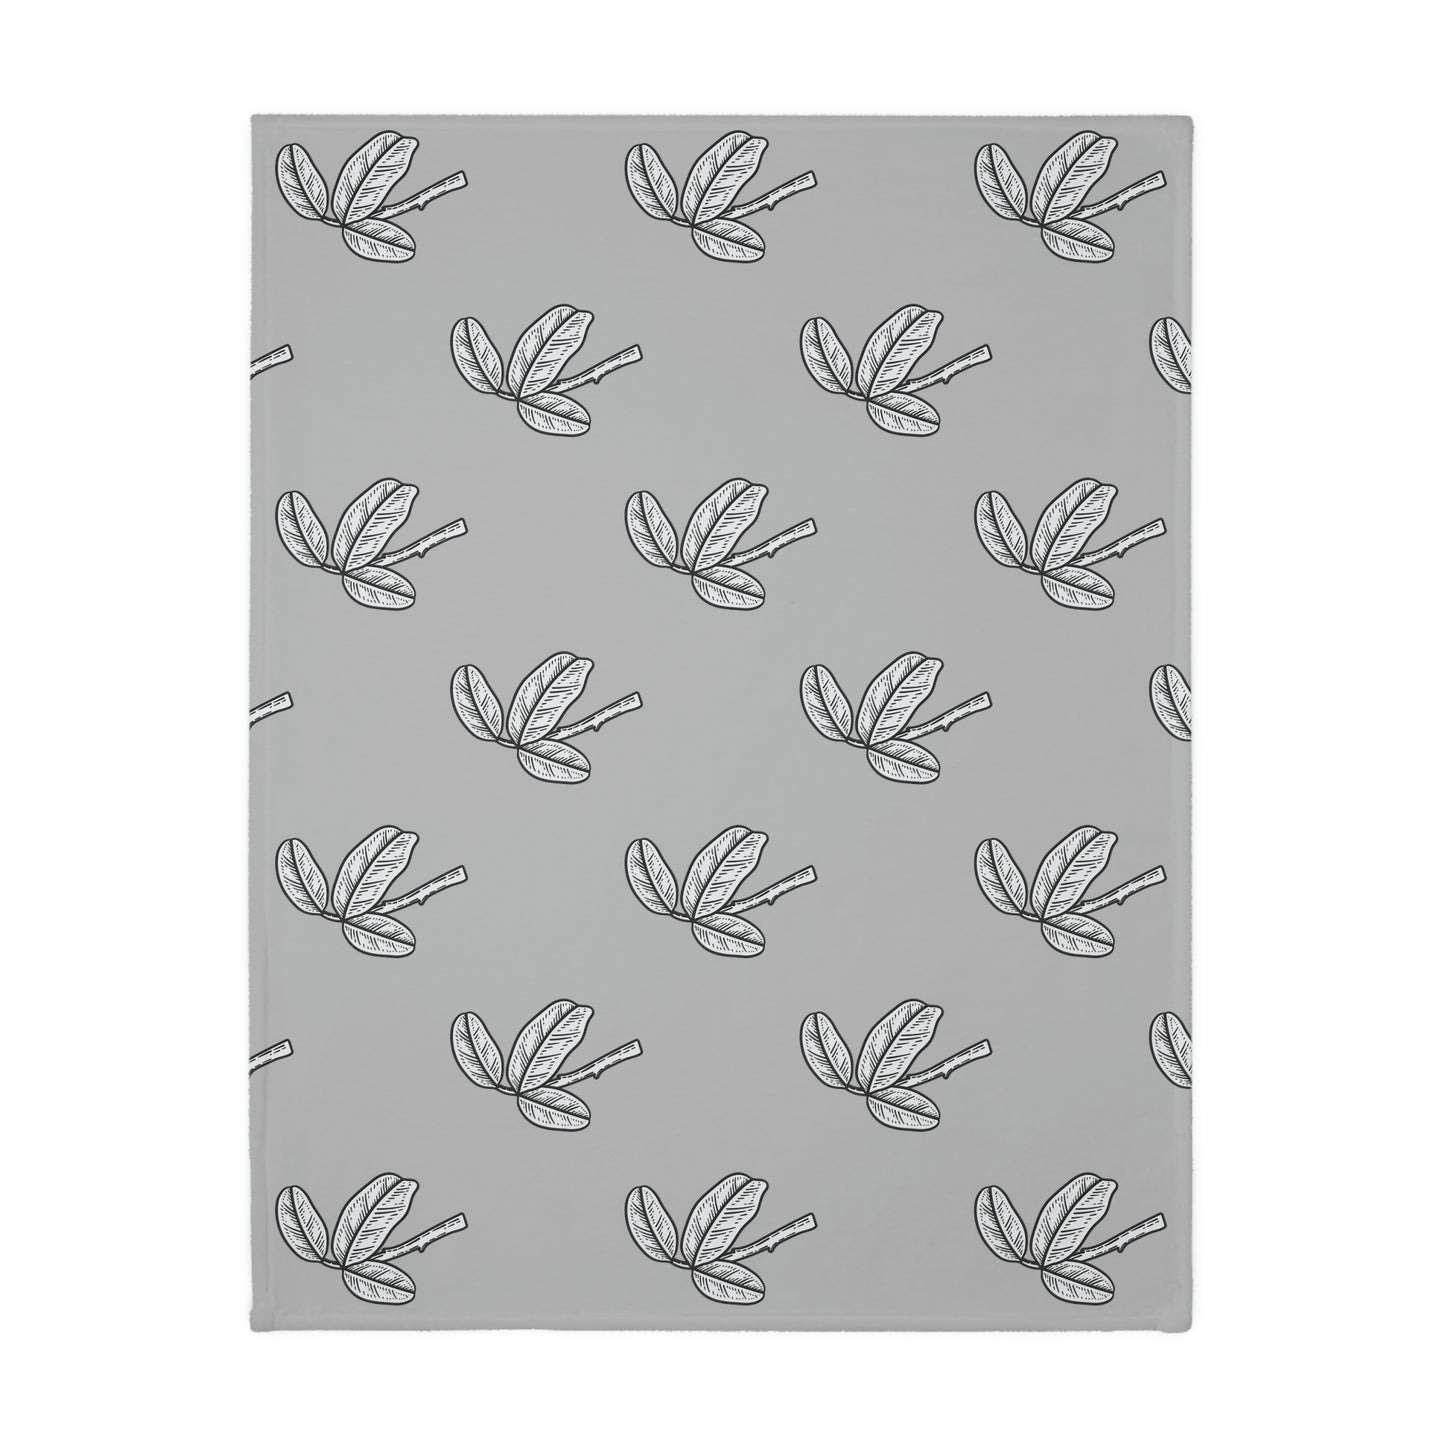 Bird Velveteen Minky Blanket (Two-sided print)